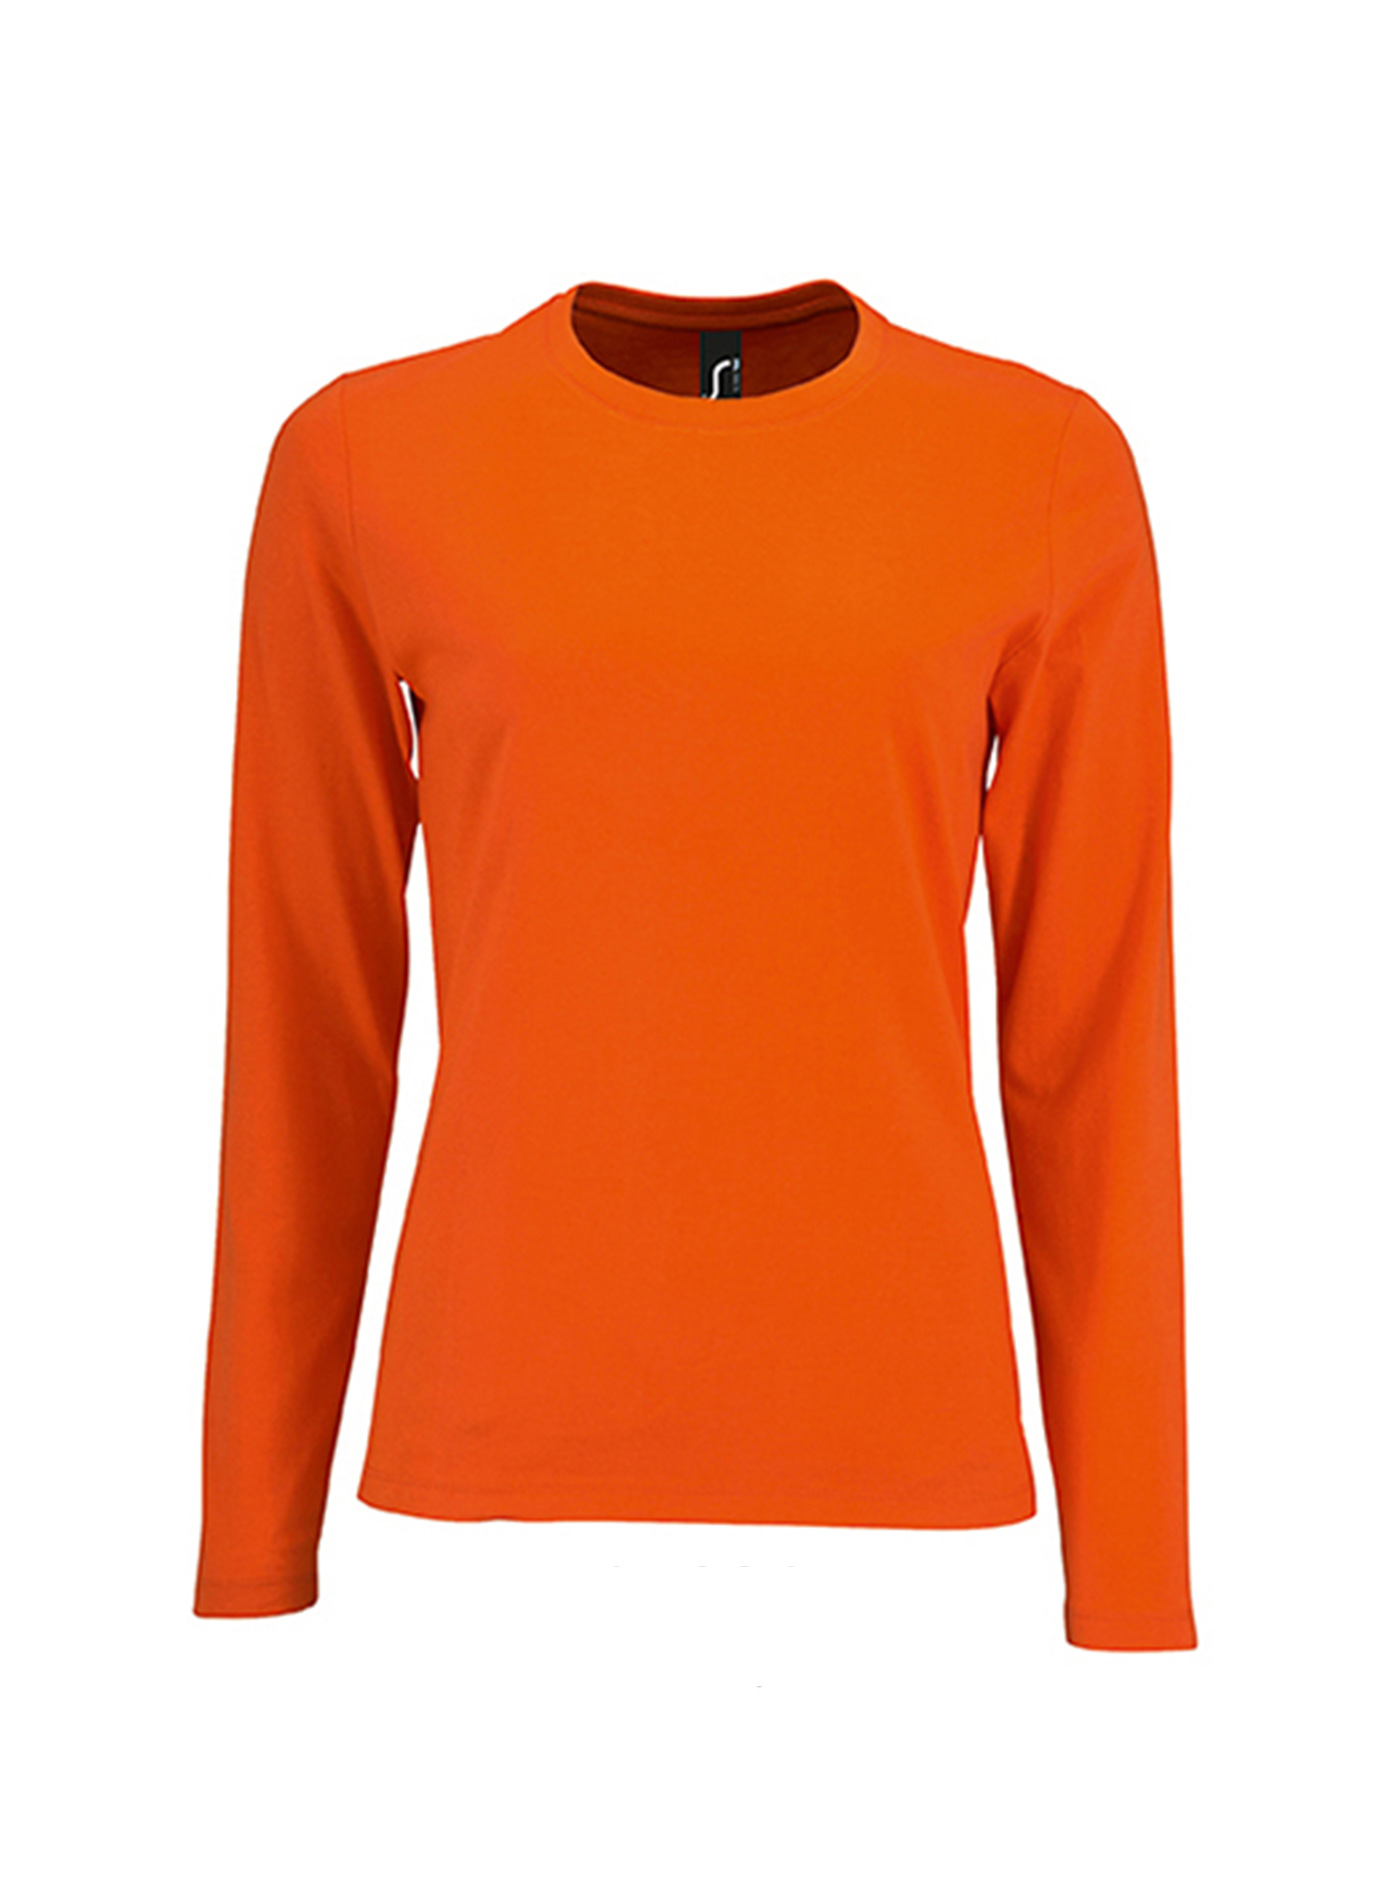 Dámské tričko s dlouhým rukávem SOL´S Imperial - Zářivá oranžová XXL